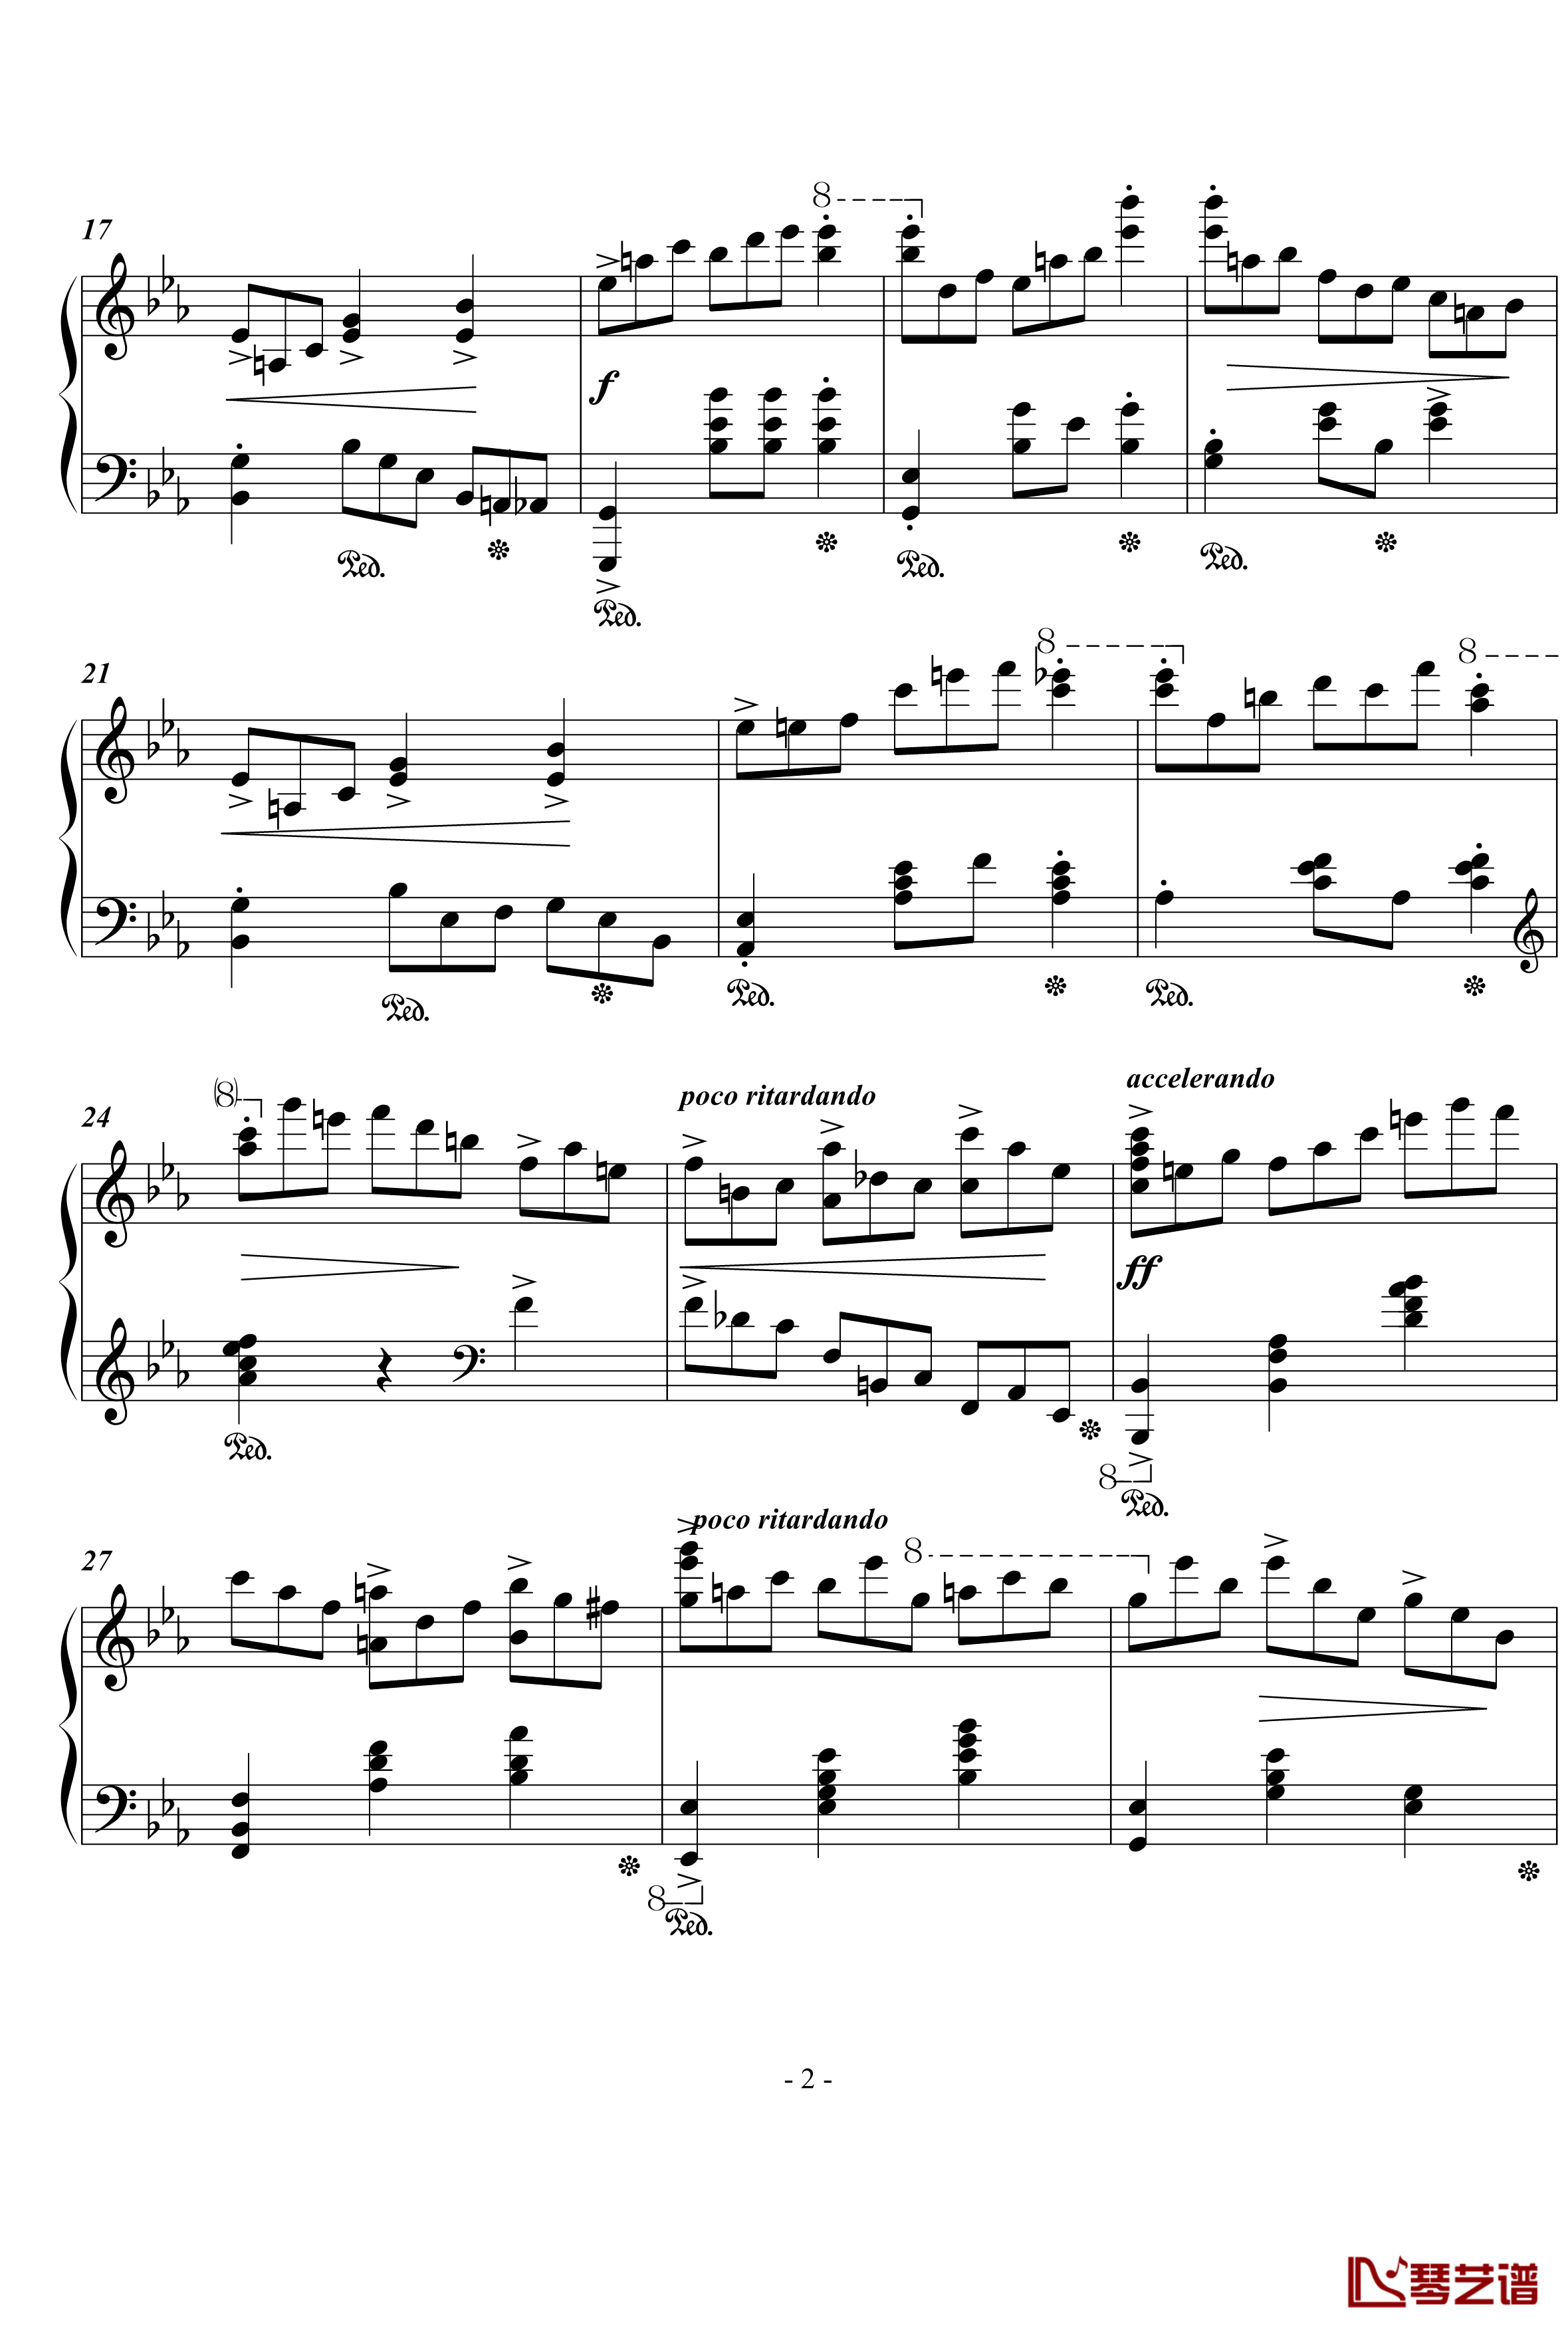 蓝色多瑙河钢琴谱-简化版-世界名曲2